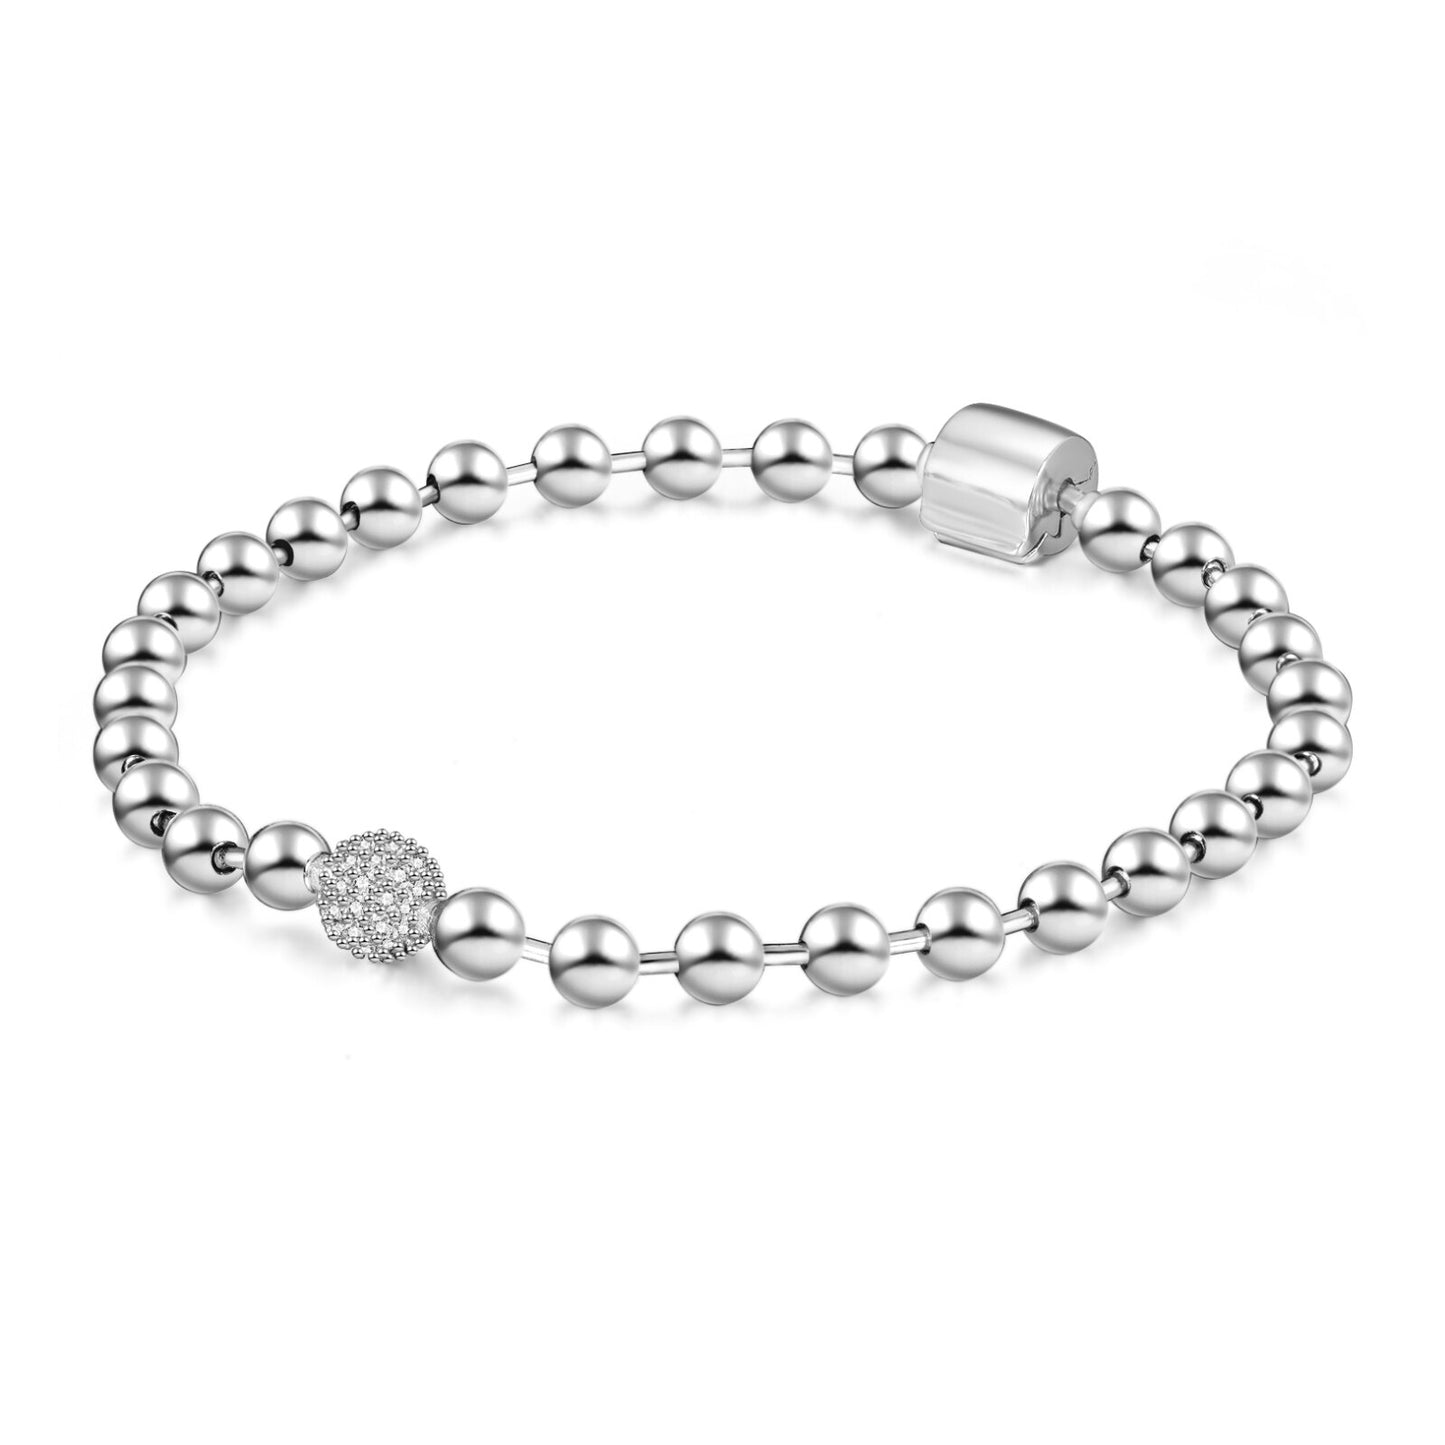 Bead Chain Bracelet Fit Original Bracelet Charm